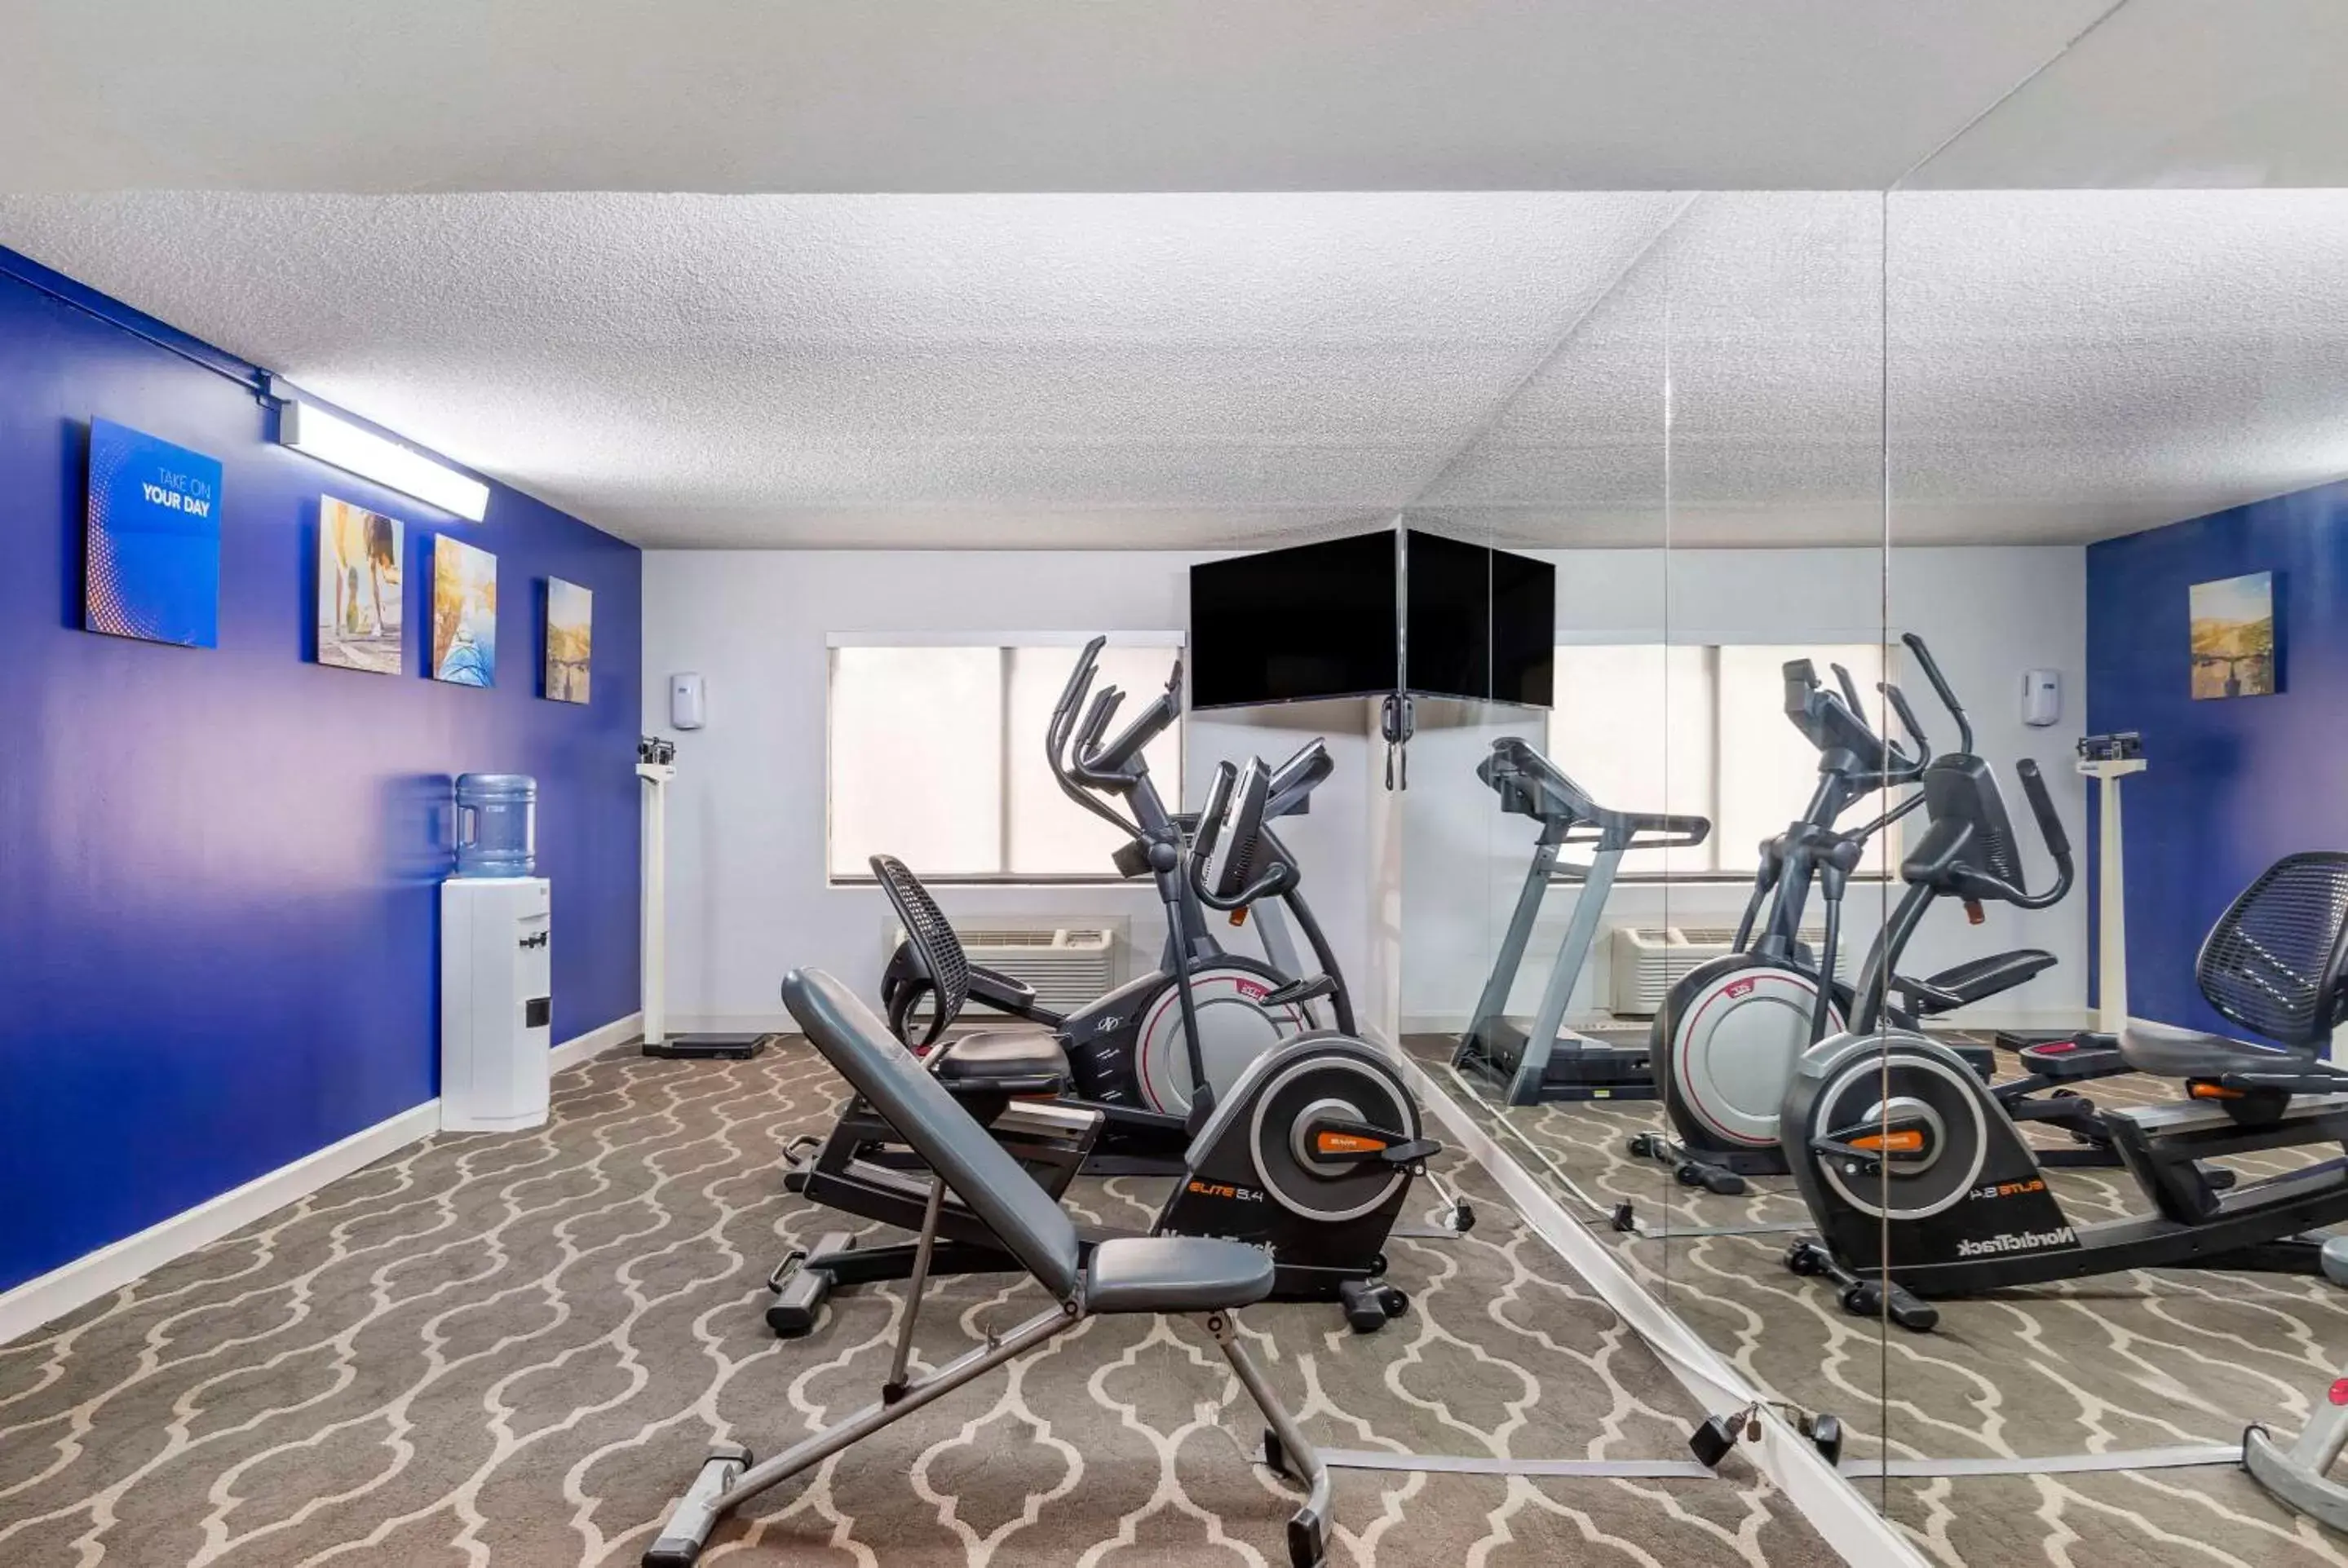 Fitness centre/facilities, Fitness Center/Facilities in Comfort Inn Alpharetta-Atlanta North